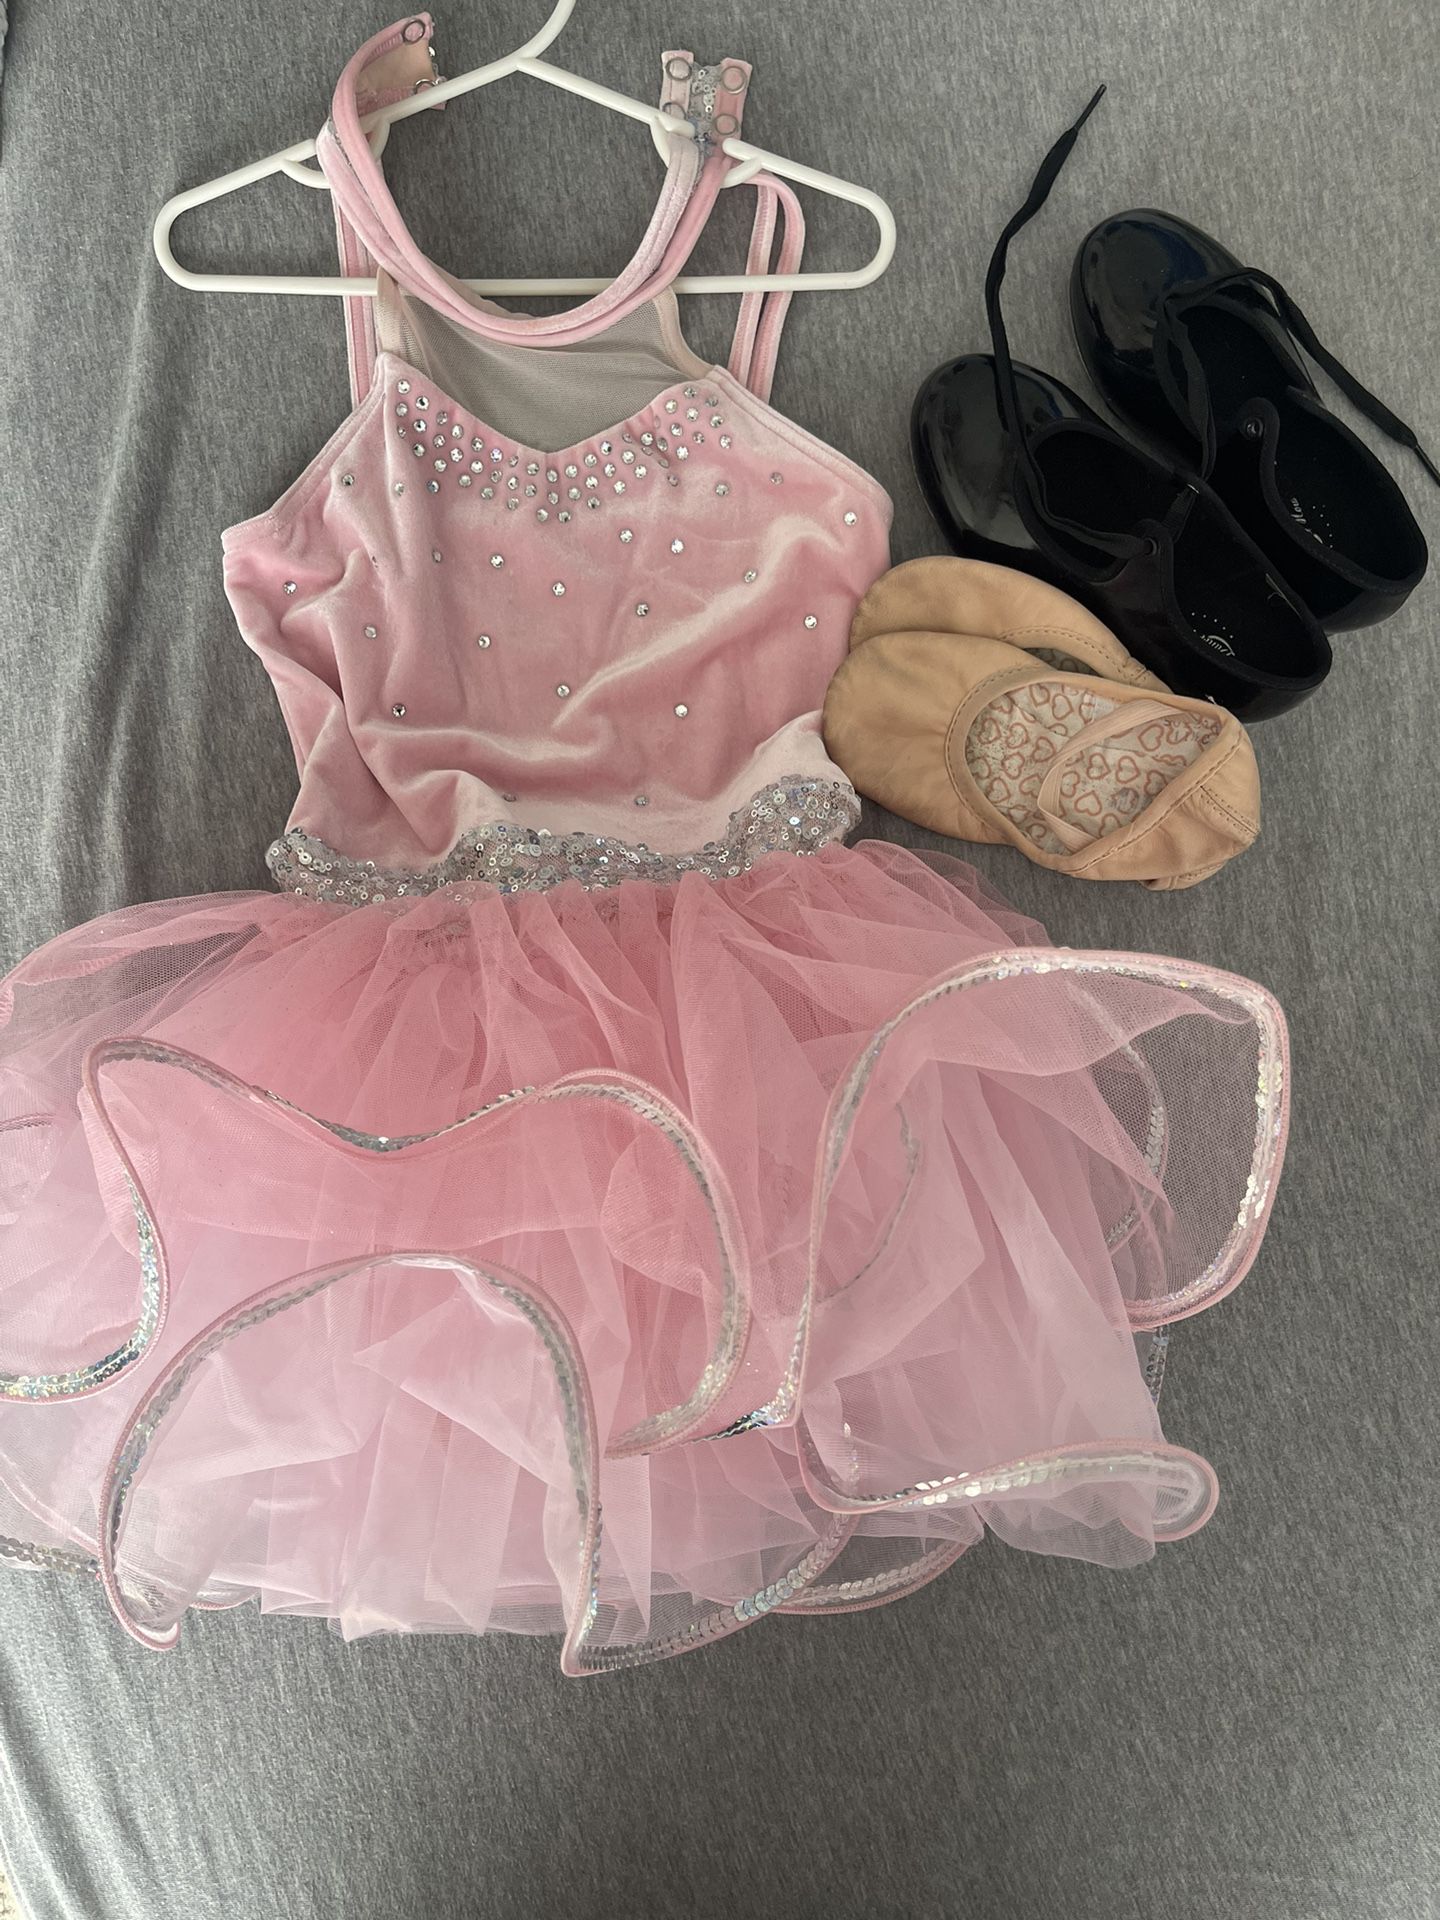 Dance Bundle Dress, tap shoes, ballet shoes